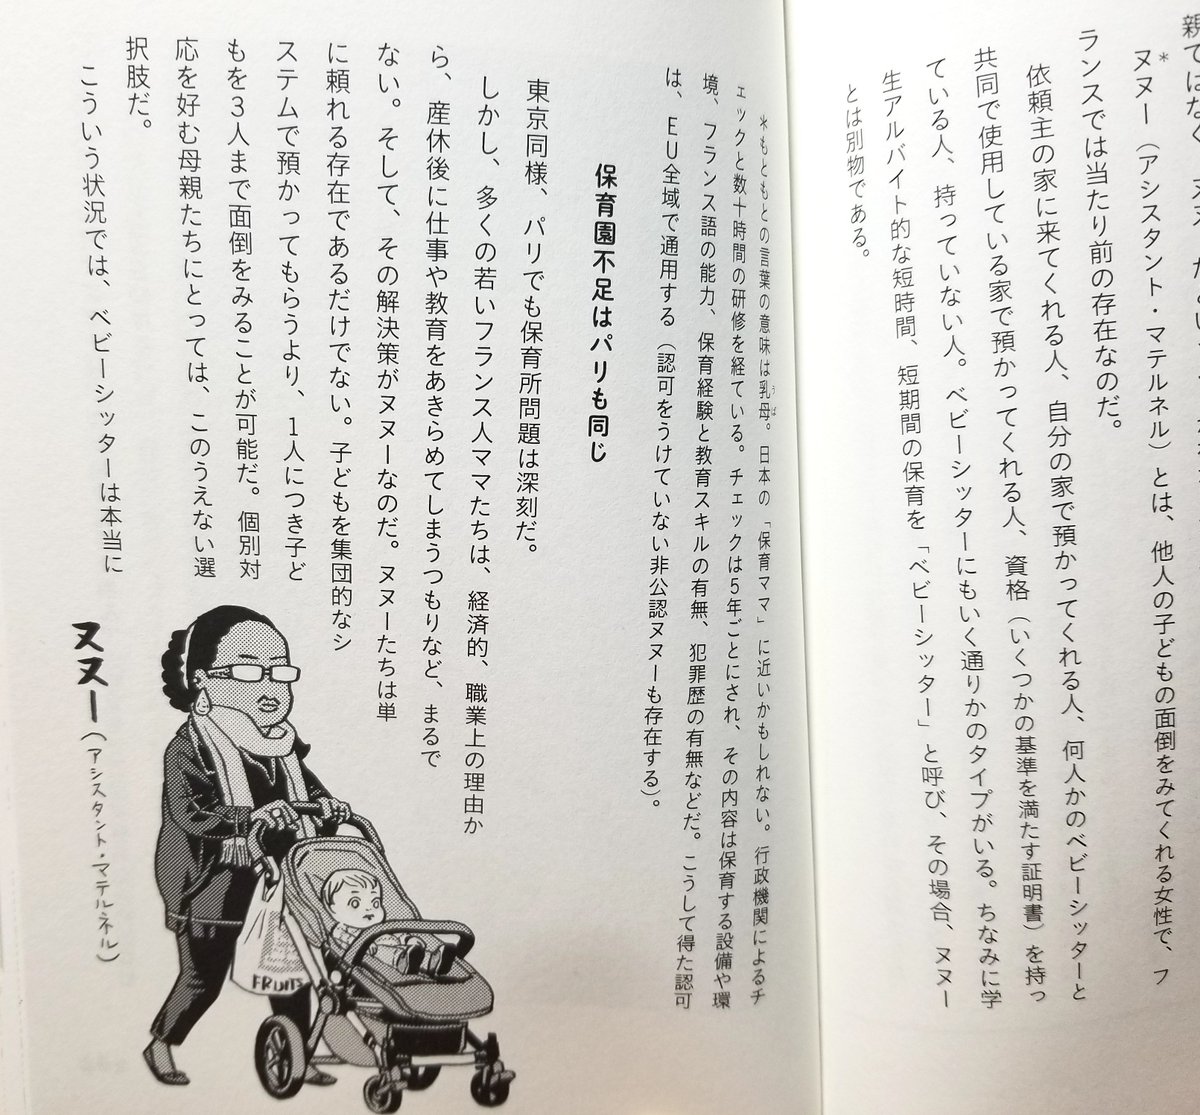 フランスのヌヌ(日本の保育ママに近い存在)については「フランス人ママ記者、東京で子育てする」の中でも説明しています。この本の中では「ヌヌー」と表記しています。今思うと「ヌヌ」の方が良かったかな。https://t.co/uMLgDIS1vq 